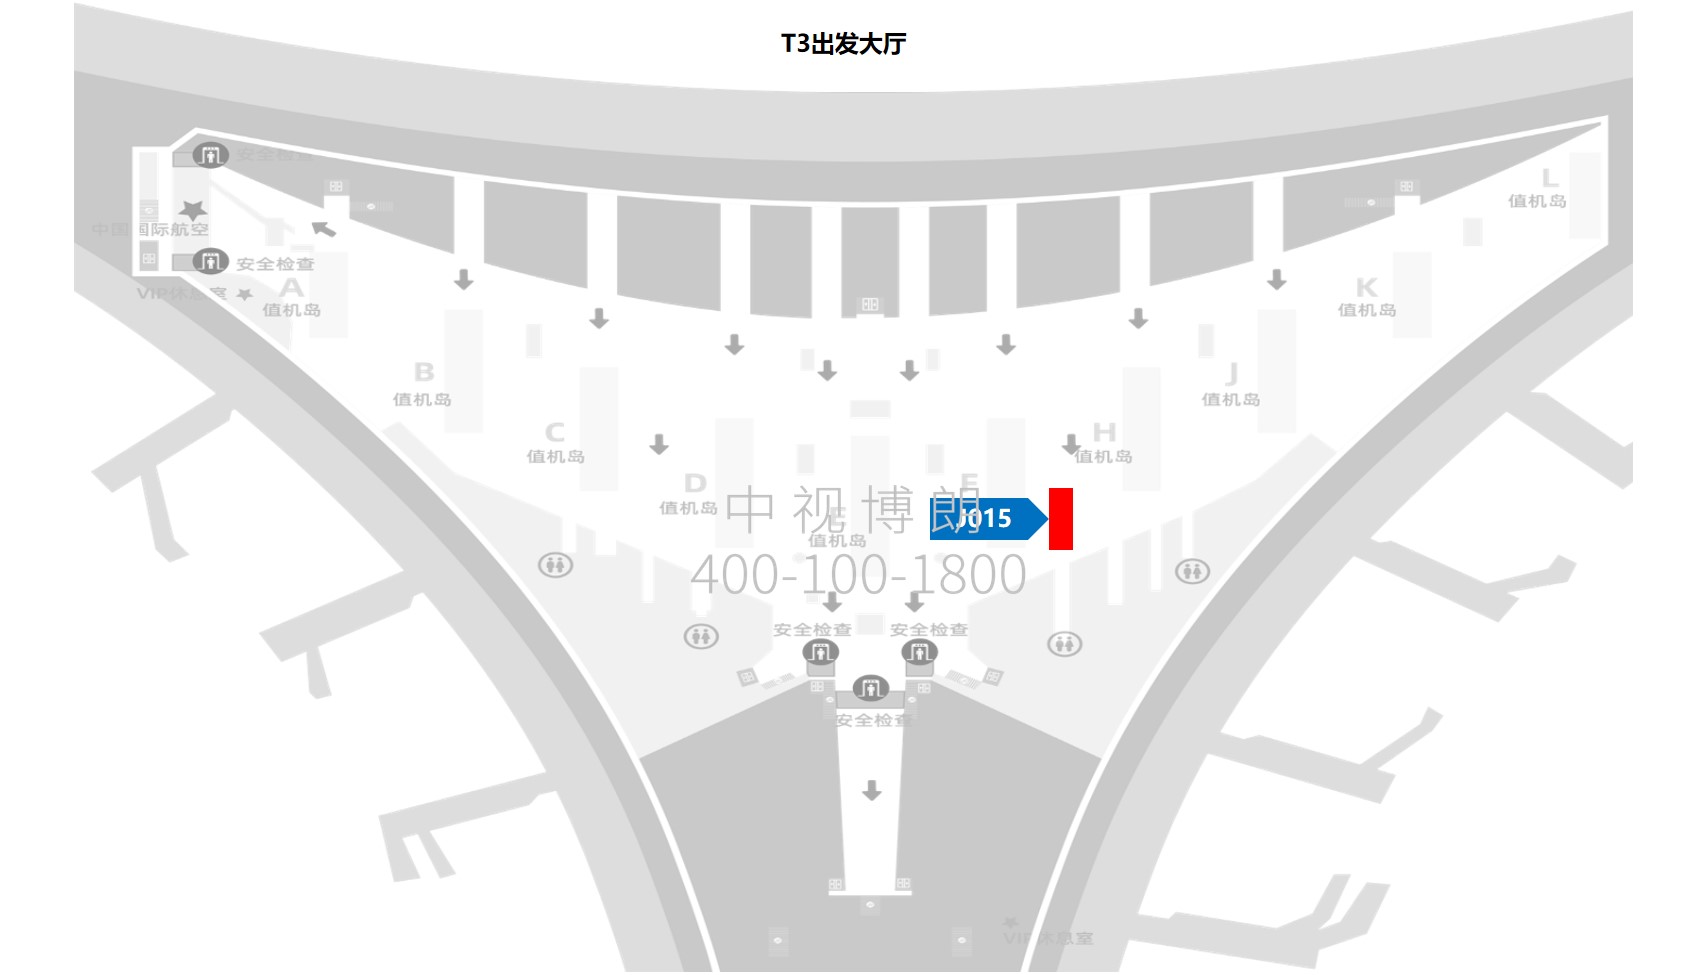 北京首都机场广告-T3出发大厅图腾灯箱J015位置图